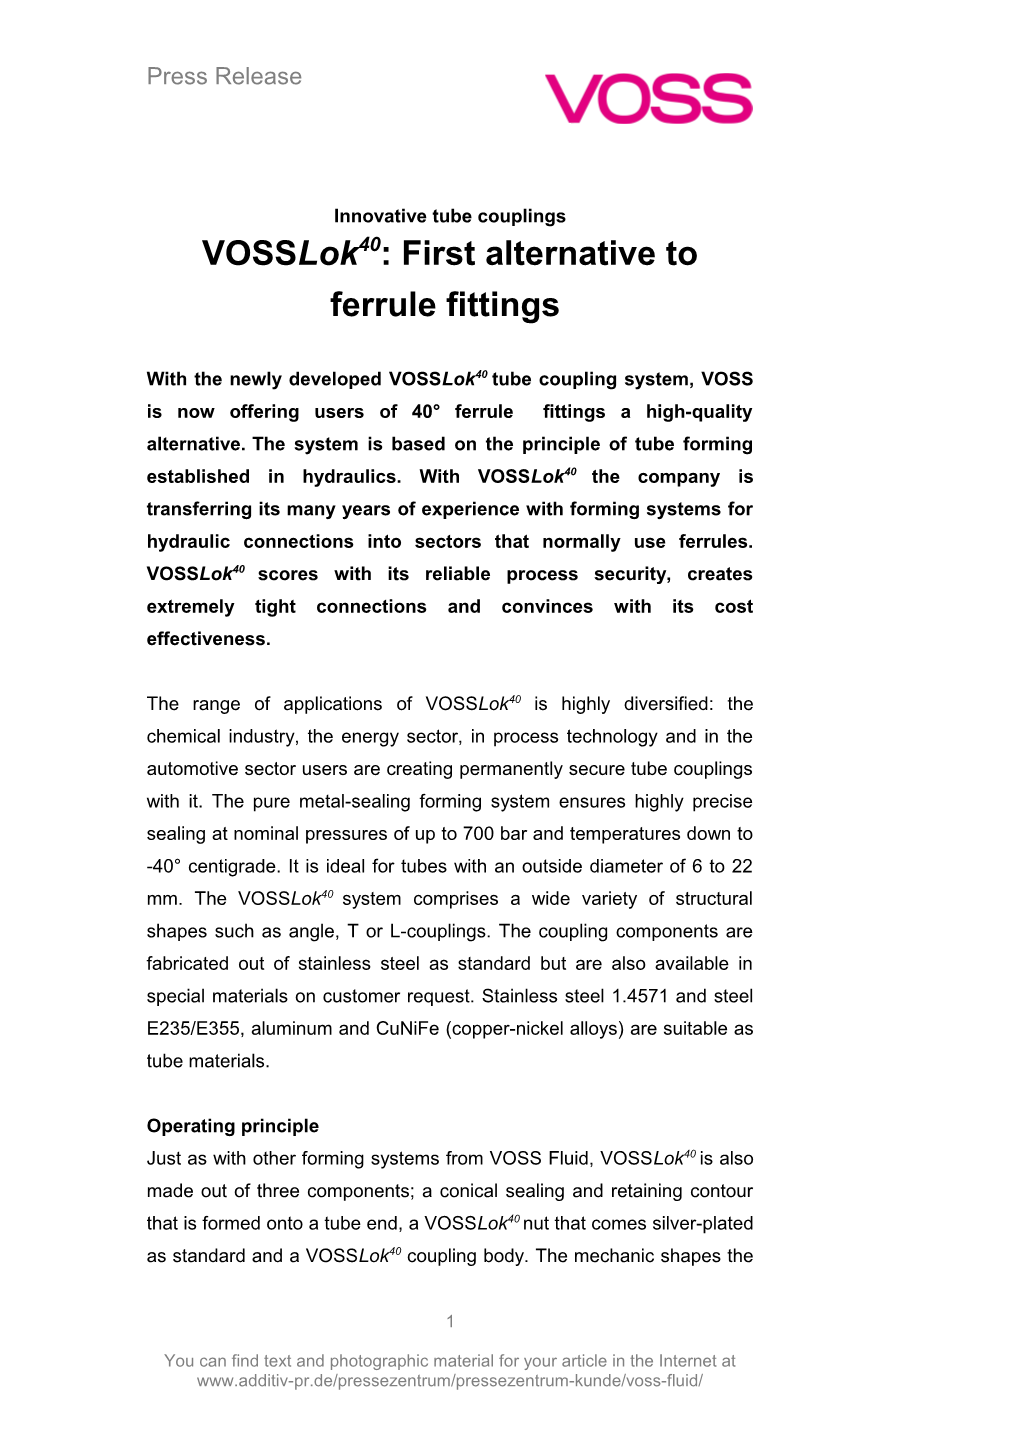 Vosslok40: First Alternative to Ferrule Fittings